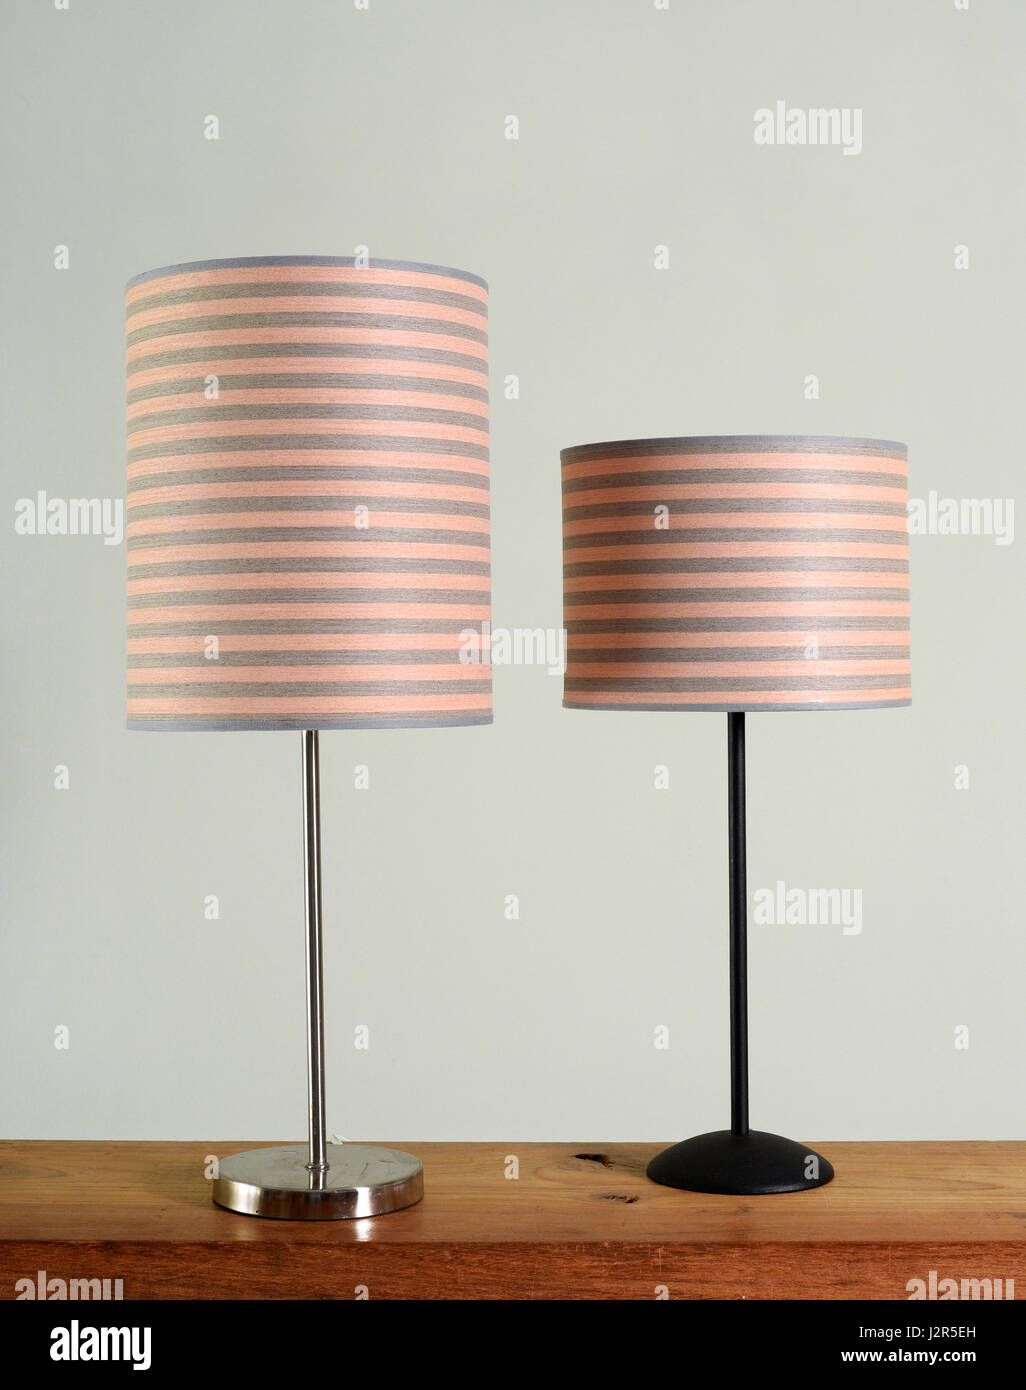 Zwei verschiedene Stil Metall-Lampen mit passenden gestreifte zylindrische Schattierungen auf einem Holztisch vor einer grünen Wand stehend Stockfoto